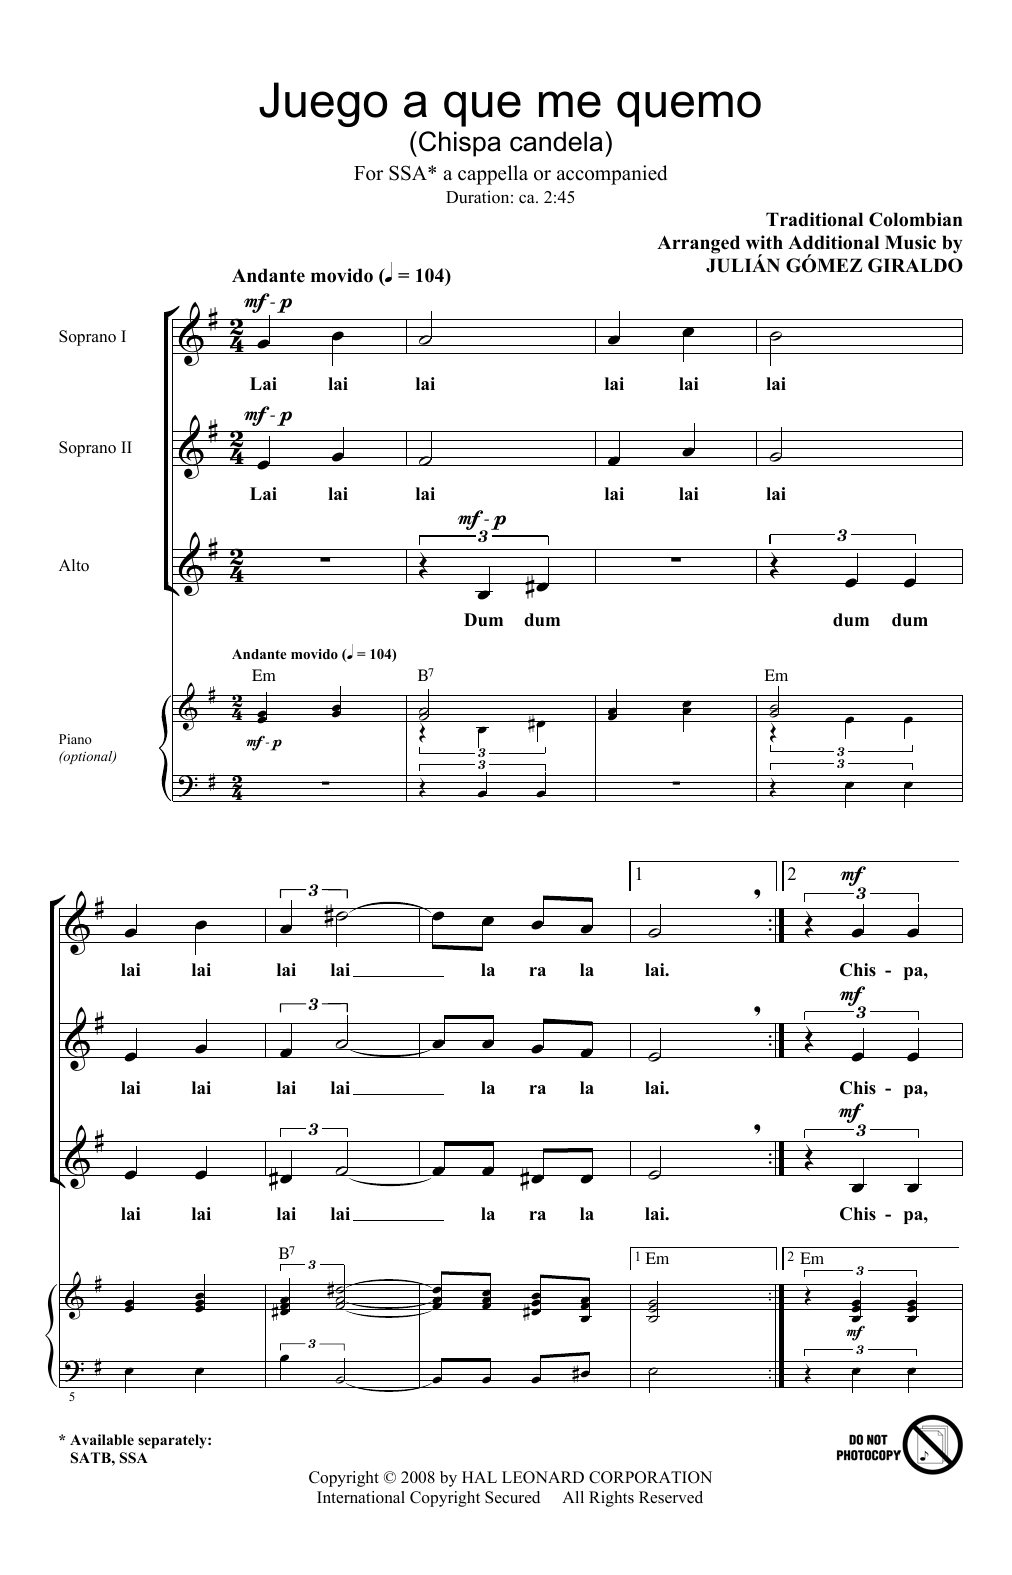 Julian Gomez Giraldo Juego A Que Me Quemo (Chispa Candela) Sheet Music Notes & Chords for SATB - Download or Print PDF